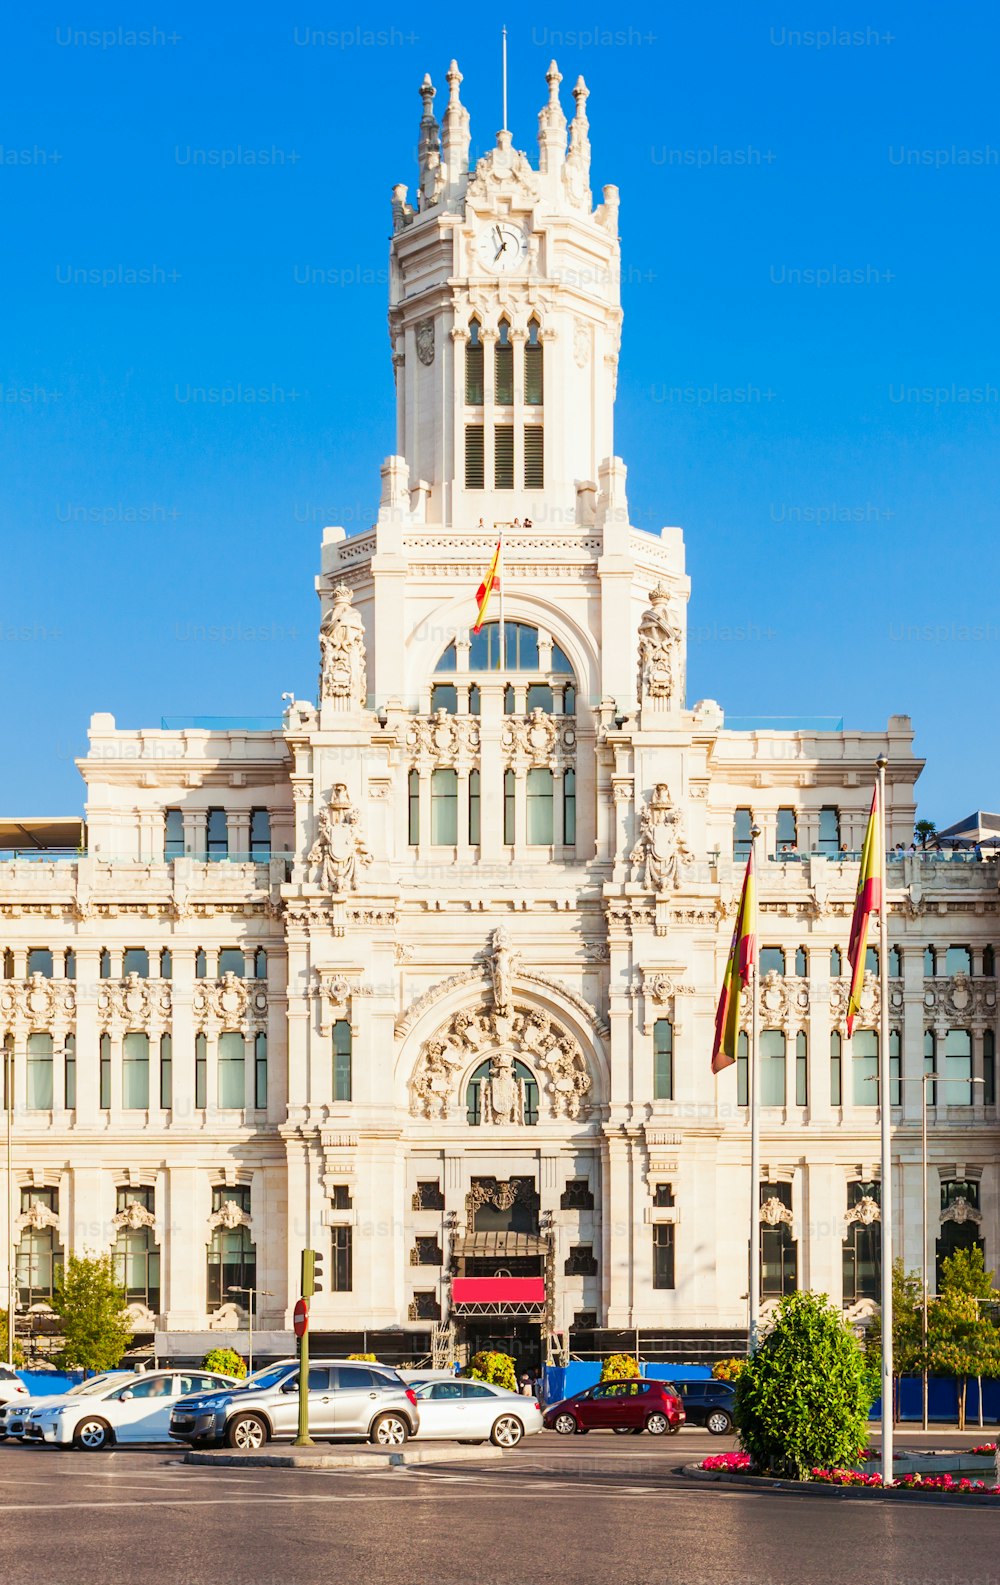 Der Kybele-Palast oder Palacio de Cibeles ist ein Palast an der Plaza de Cibeles im Stadtzentrum von Madrid, Spanien.